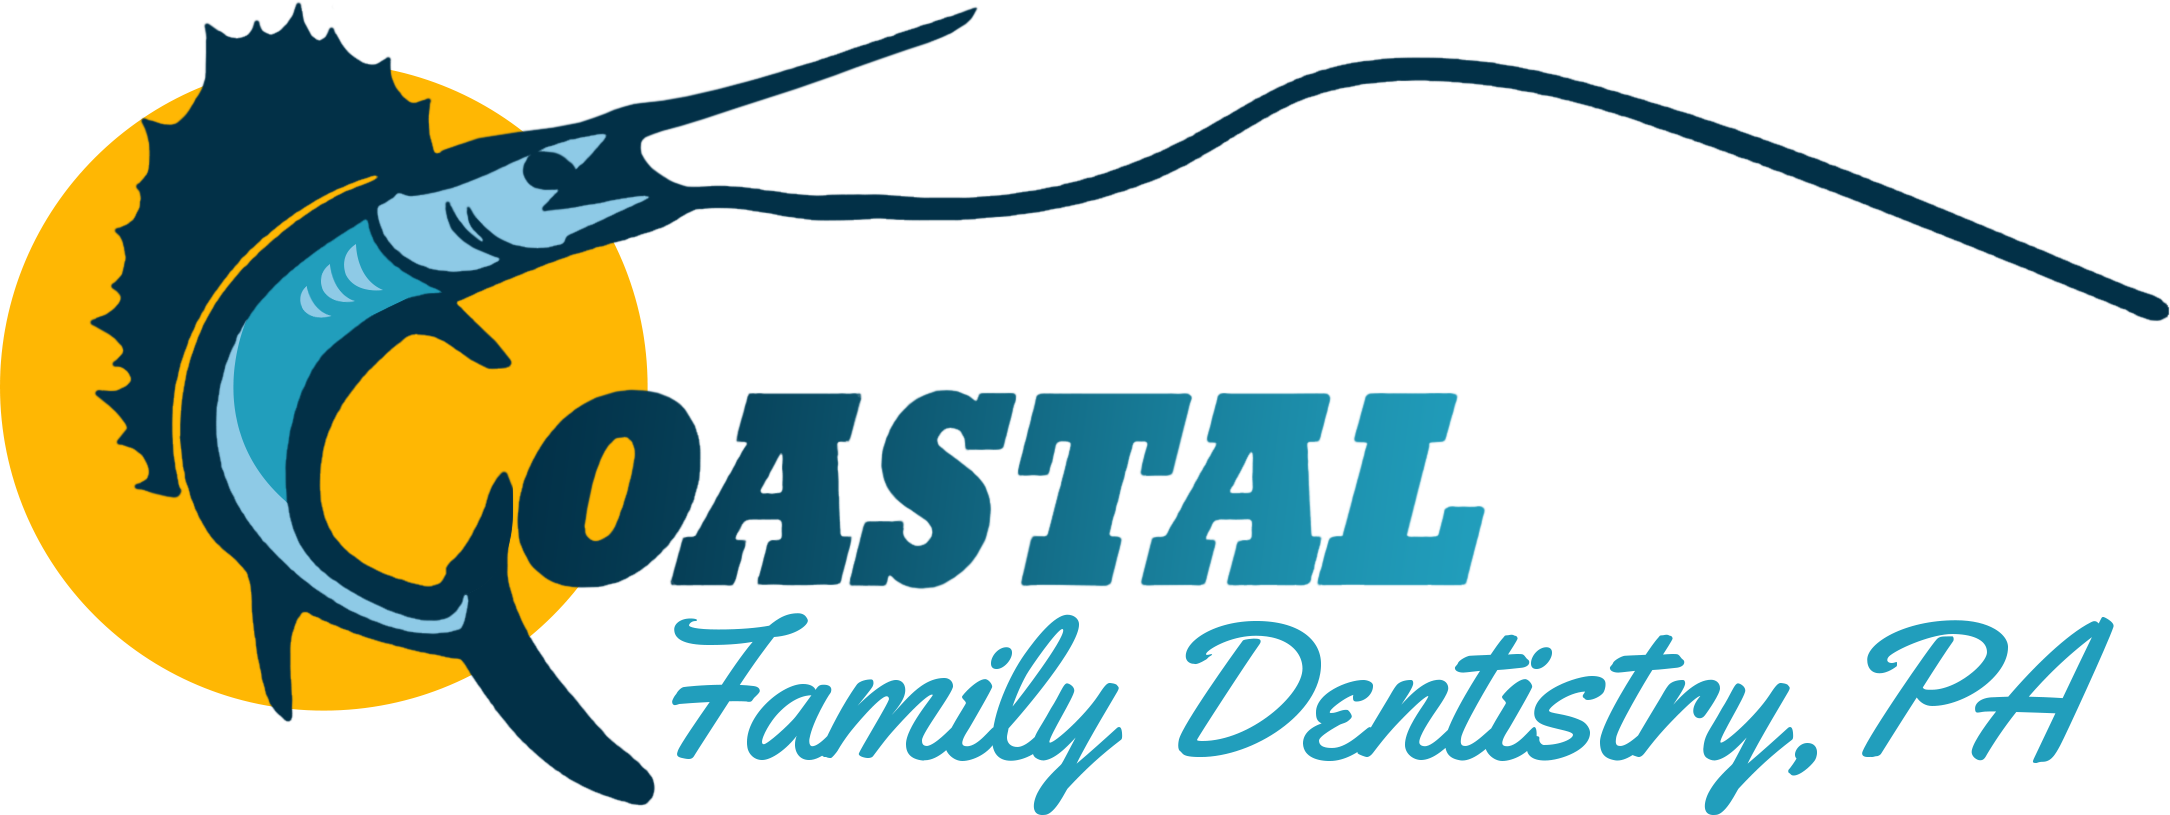 Coastal Family Dentistry